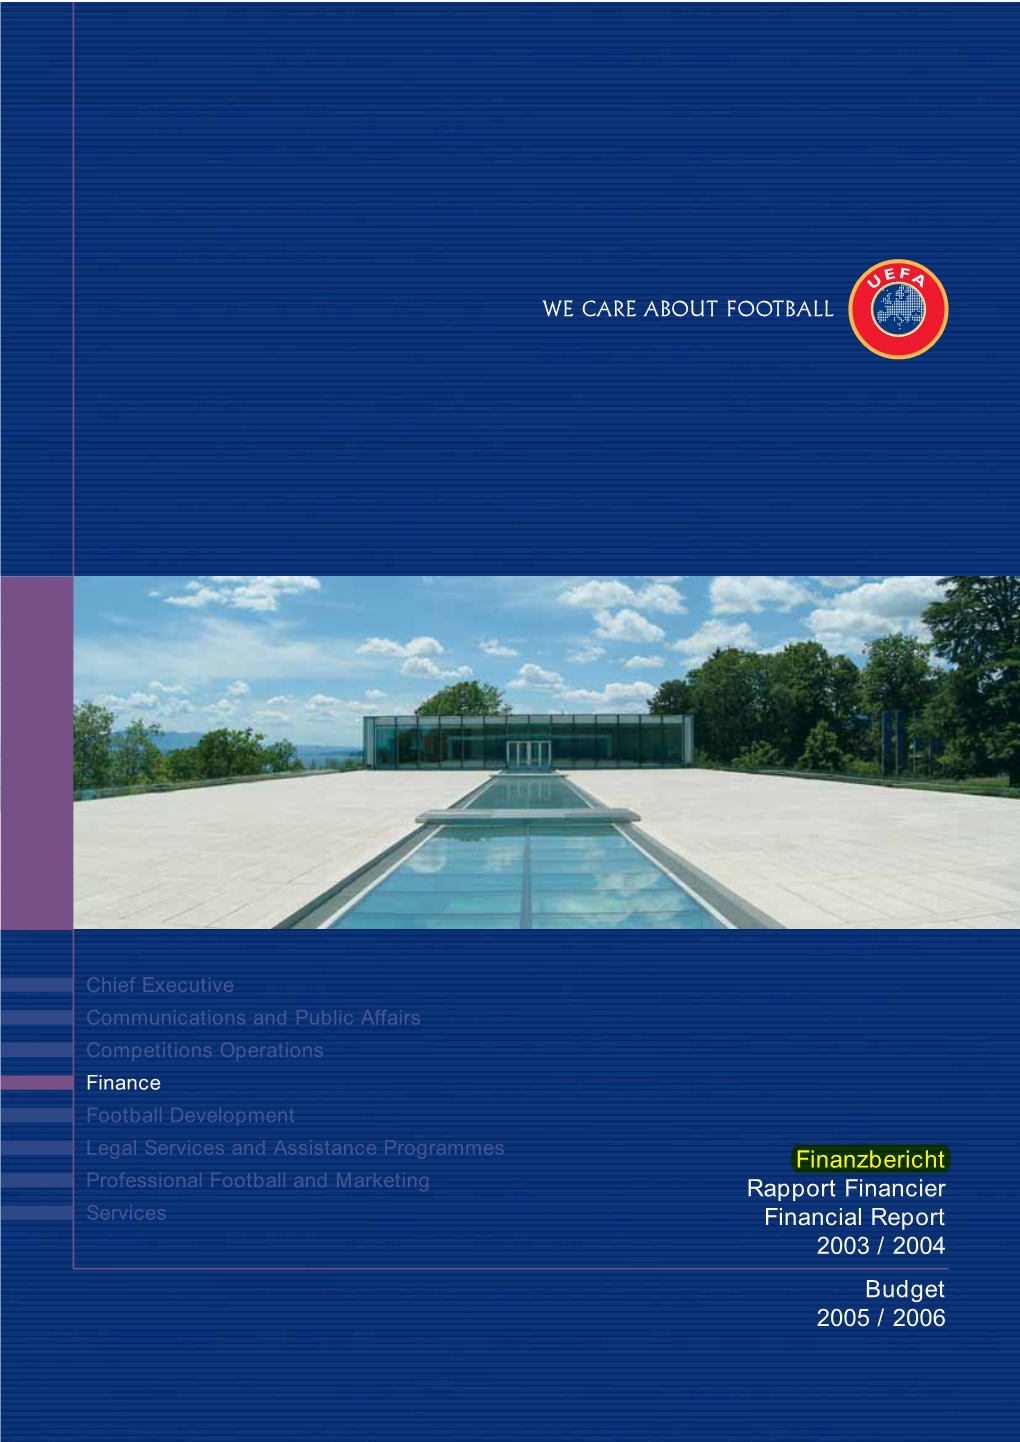 Finanzbericht Rapport Financier Financial Report 2003 / 2004